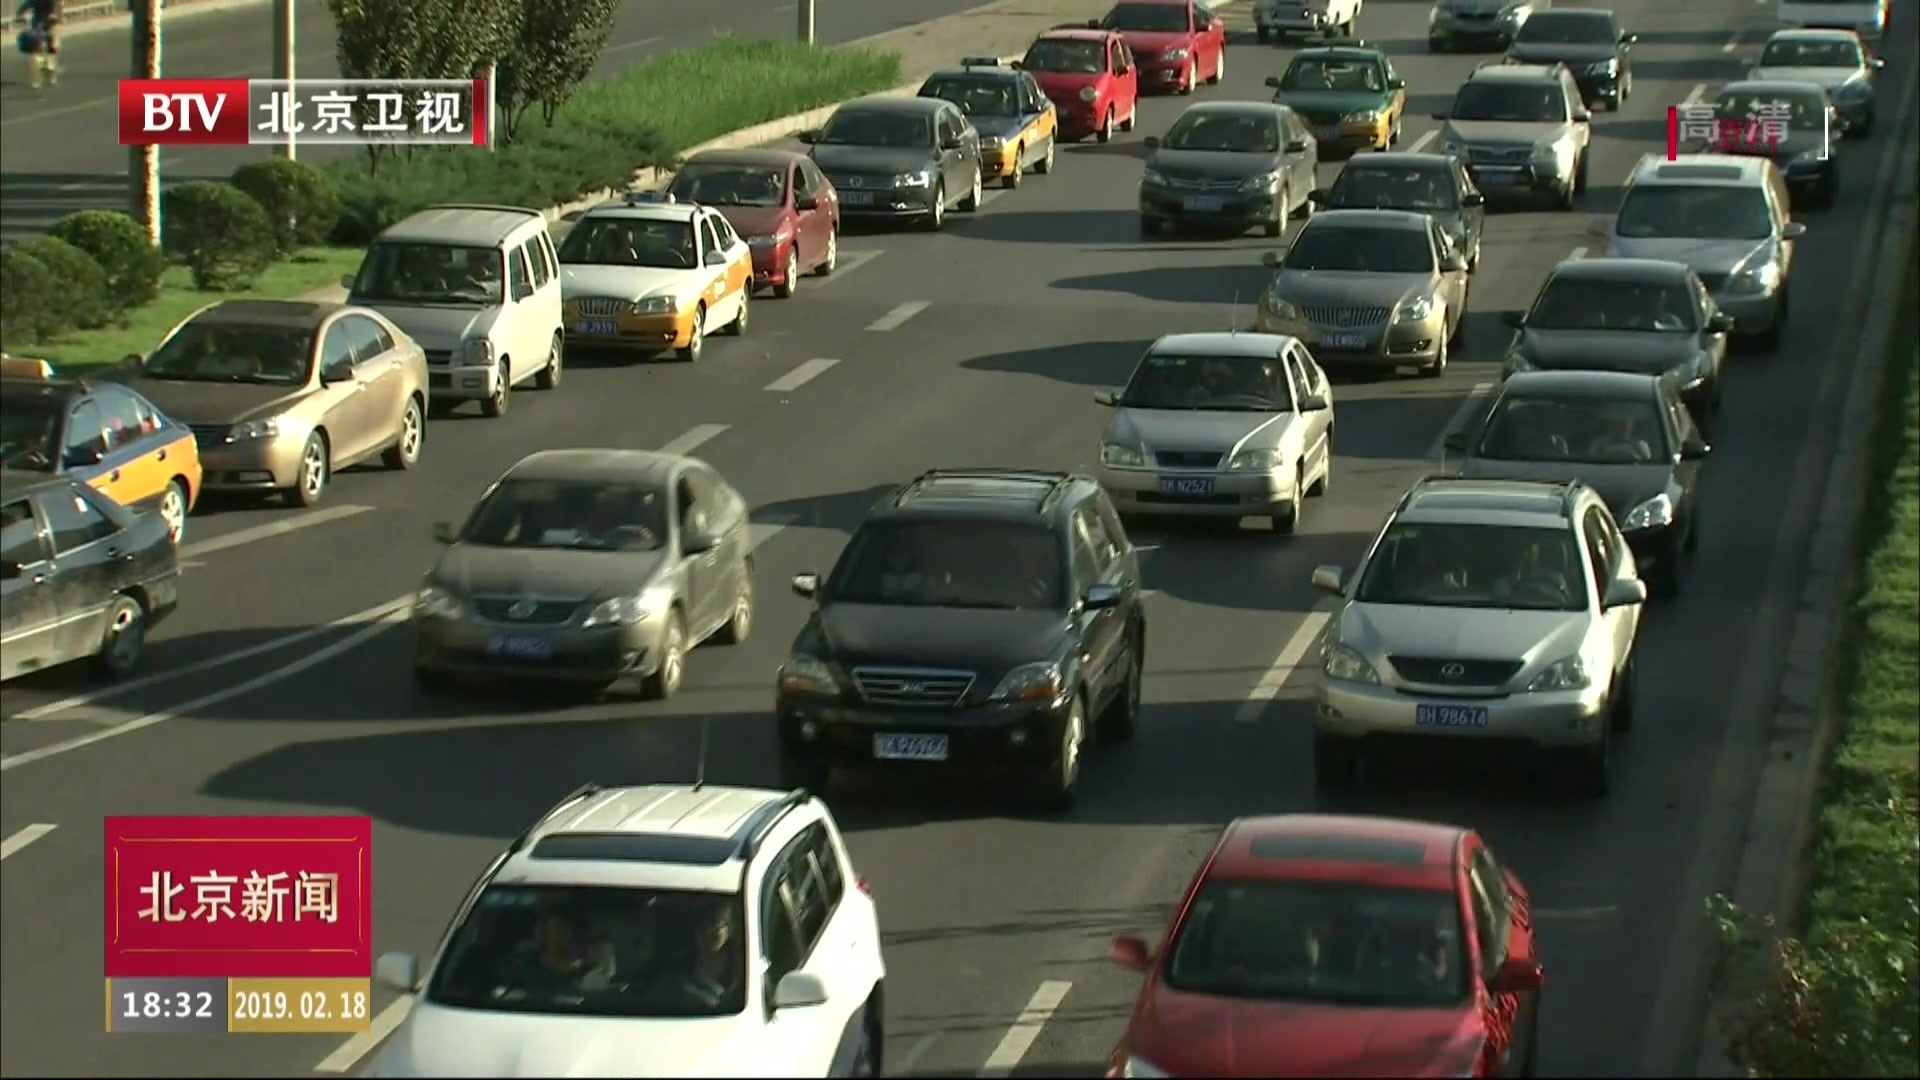 北京2019年机动车保有量控制在620万辆左右  轨道交通年内达699公里